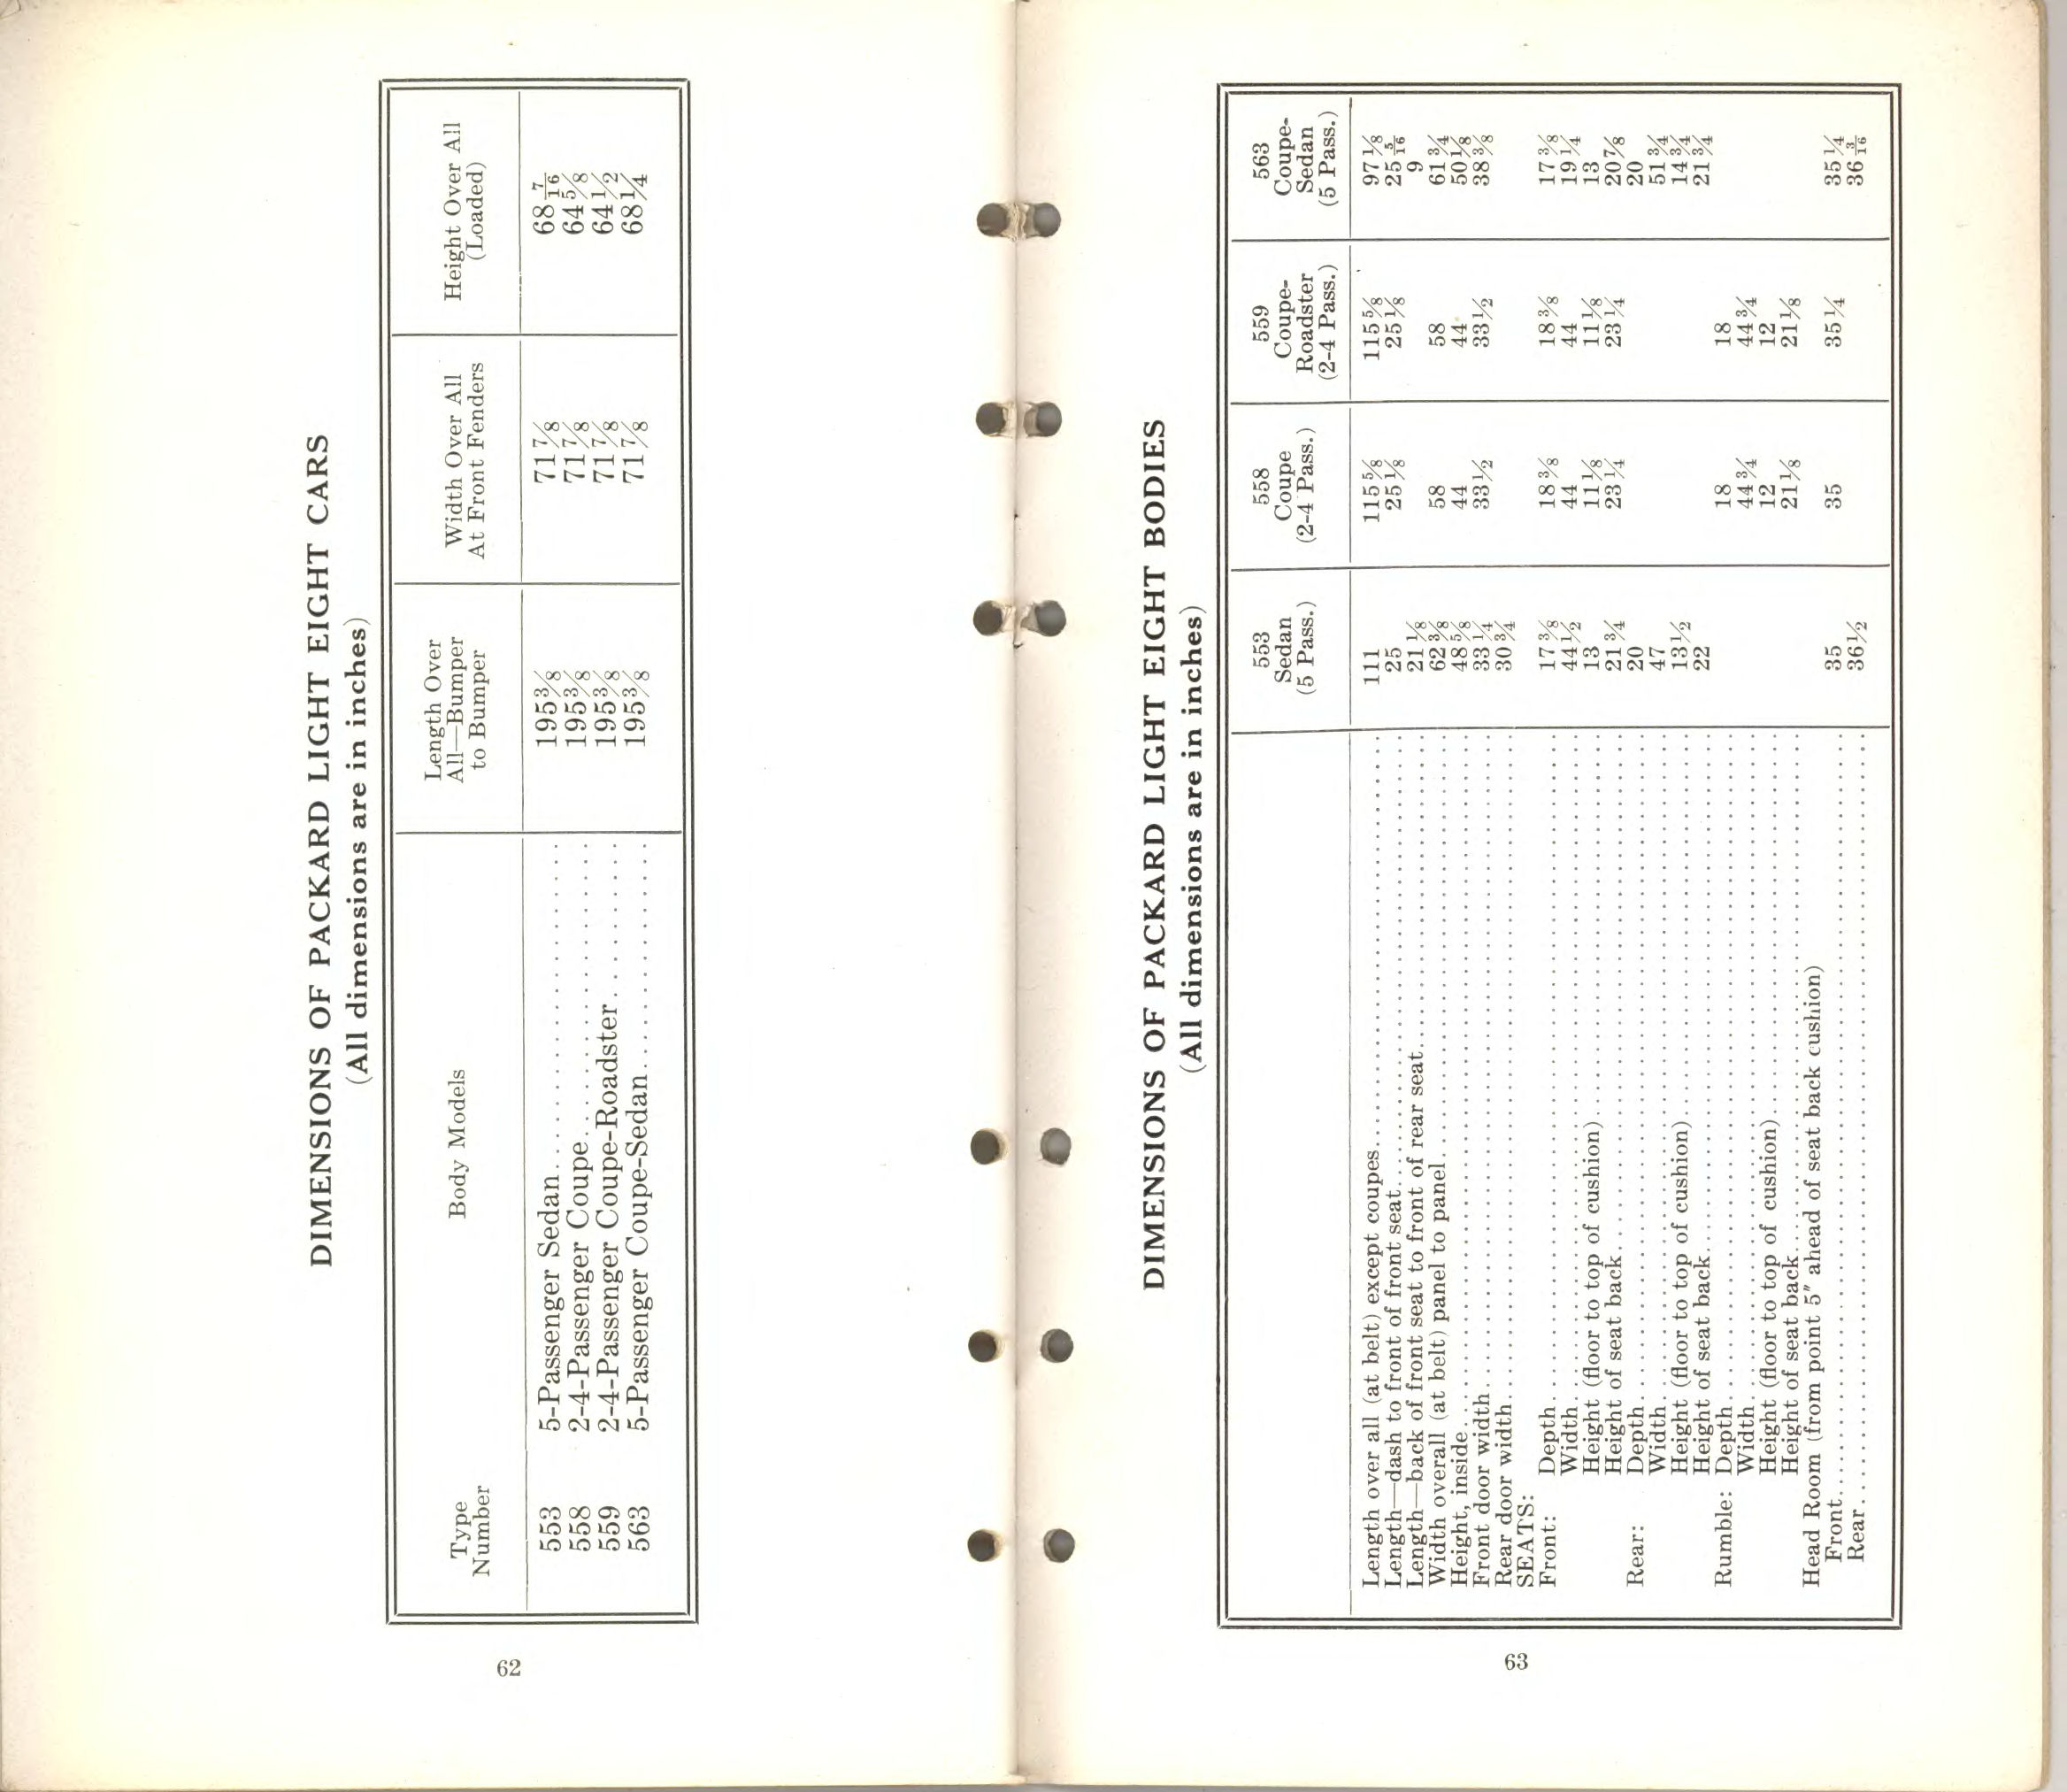 1932 Packard Data Book-62-63